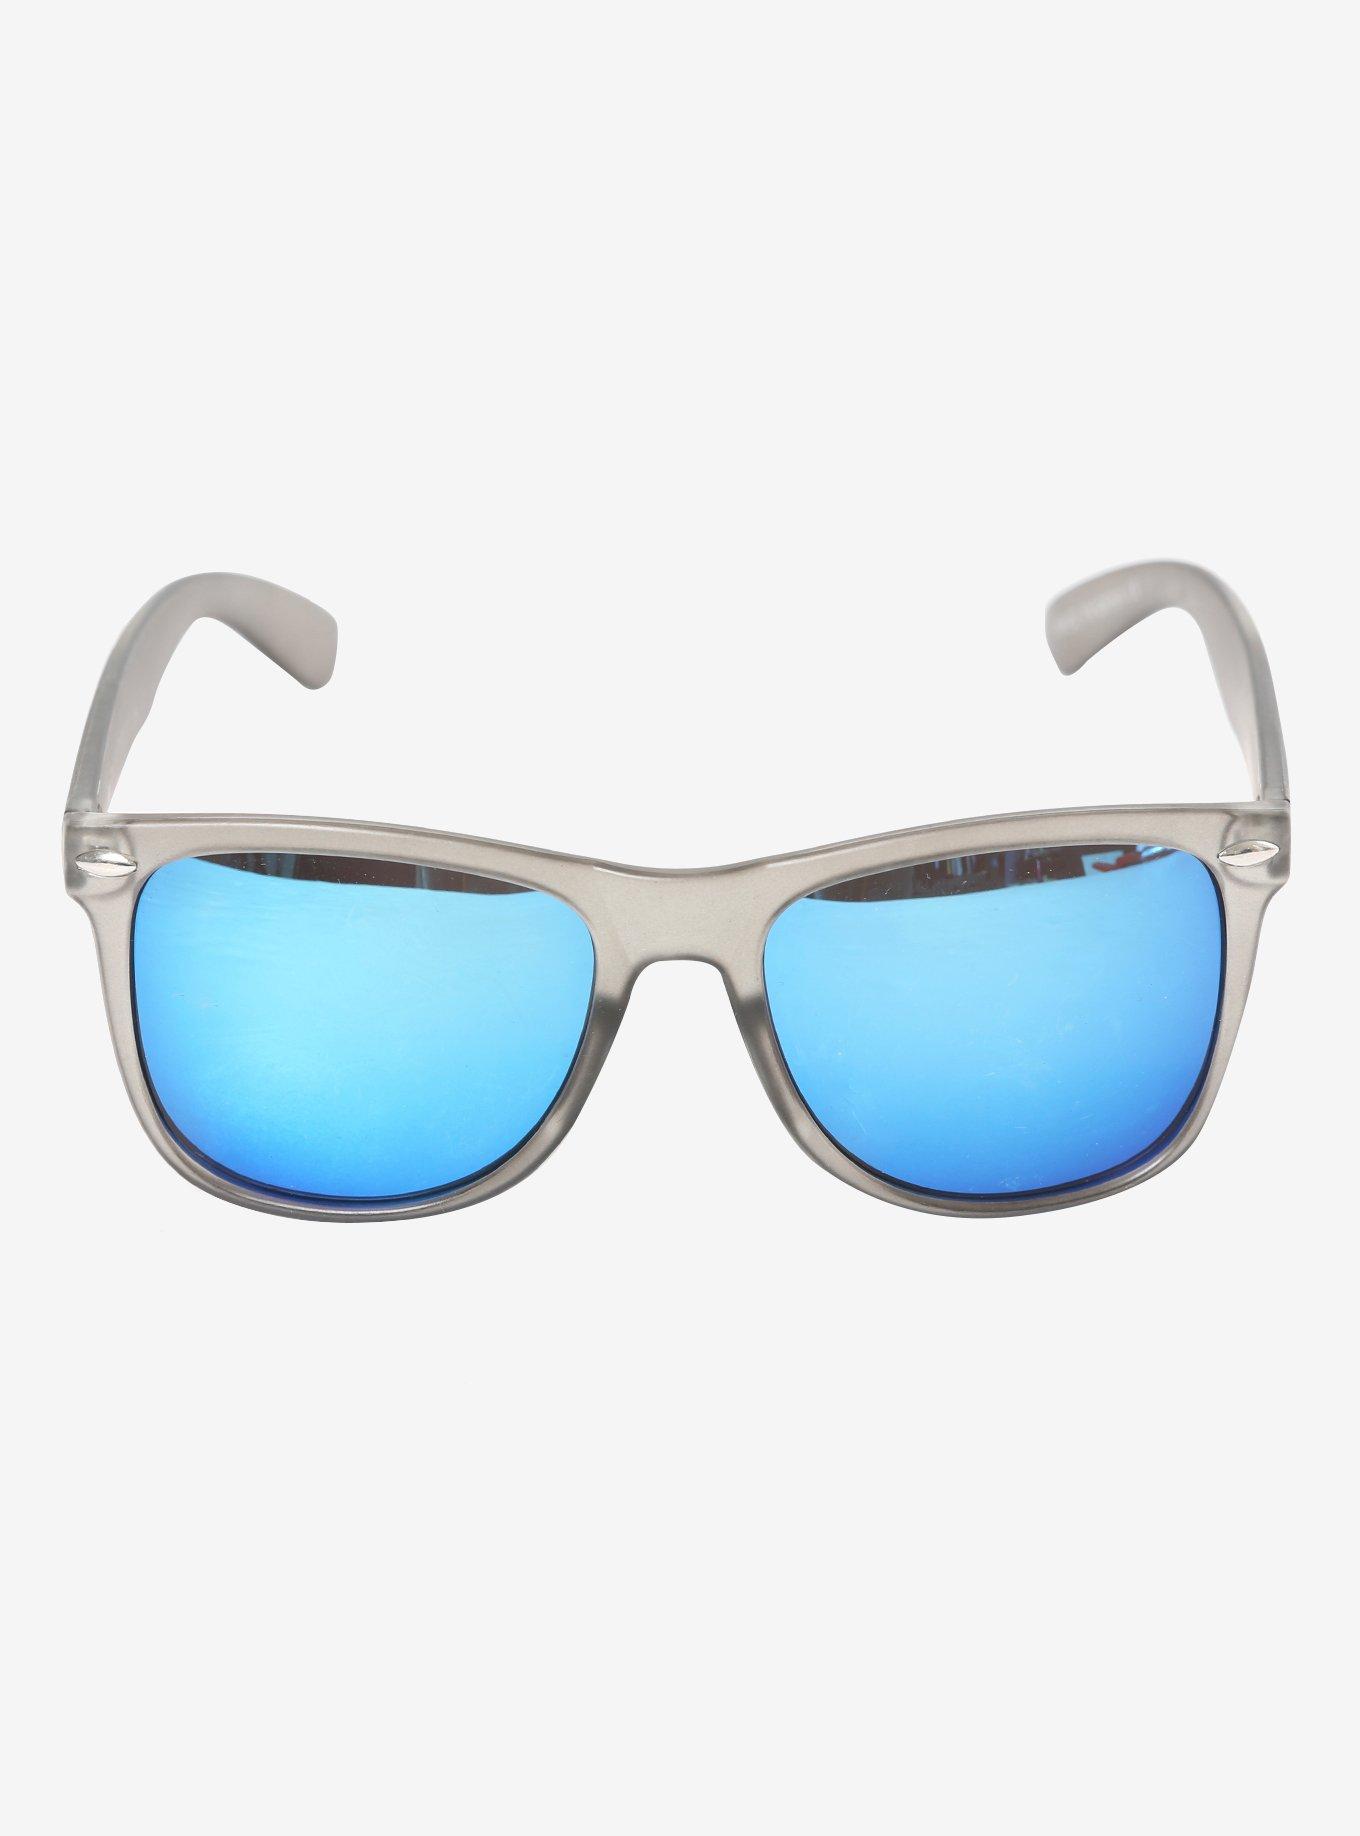 Smokey Acrylic Retro Sunglasses, , alternate